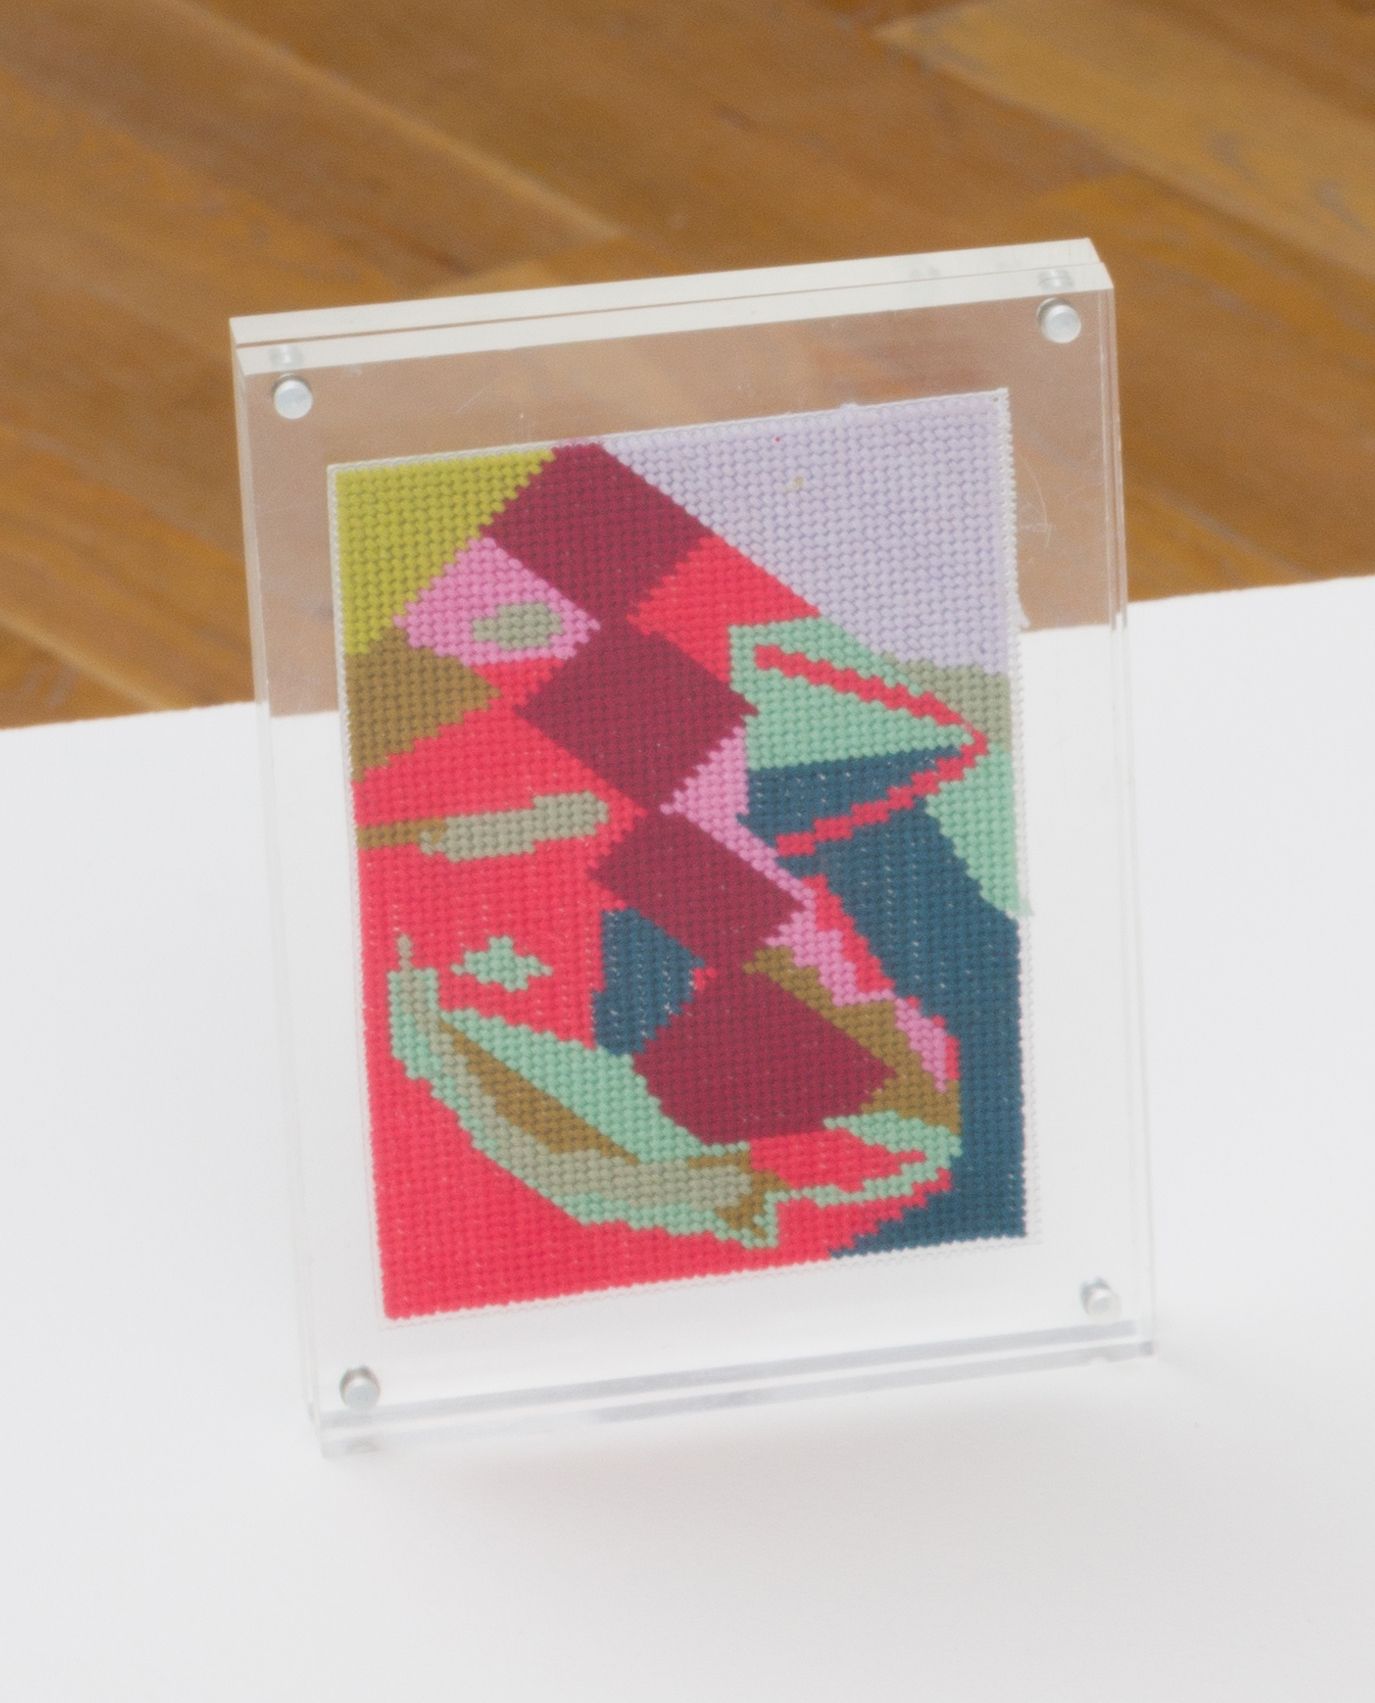 Steve Reinke, Untitled (needlepoint), 2021, floss on plastic backing, 5 1/2 x 3 5/8 in.